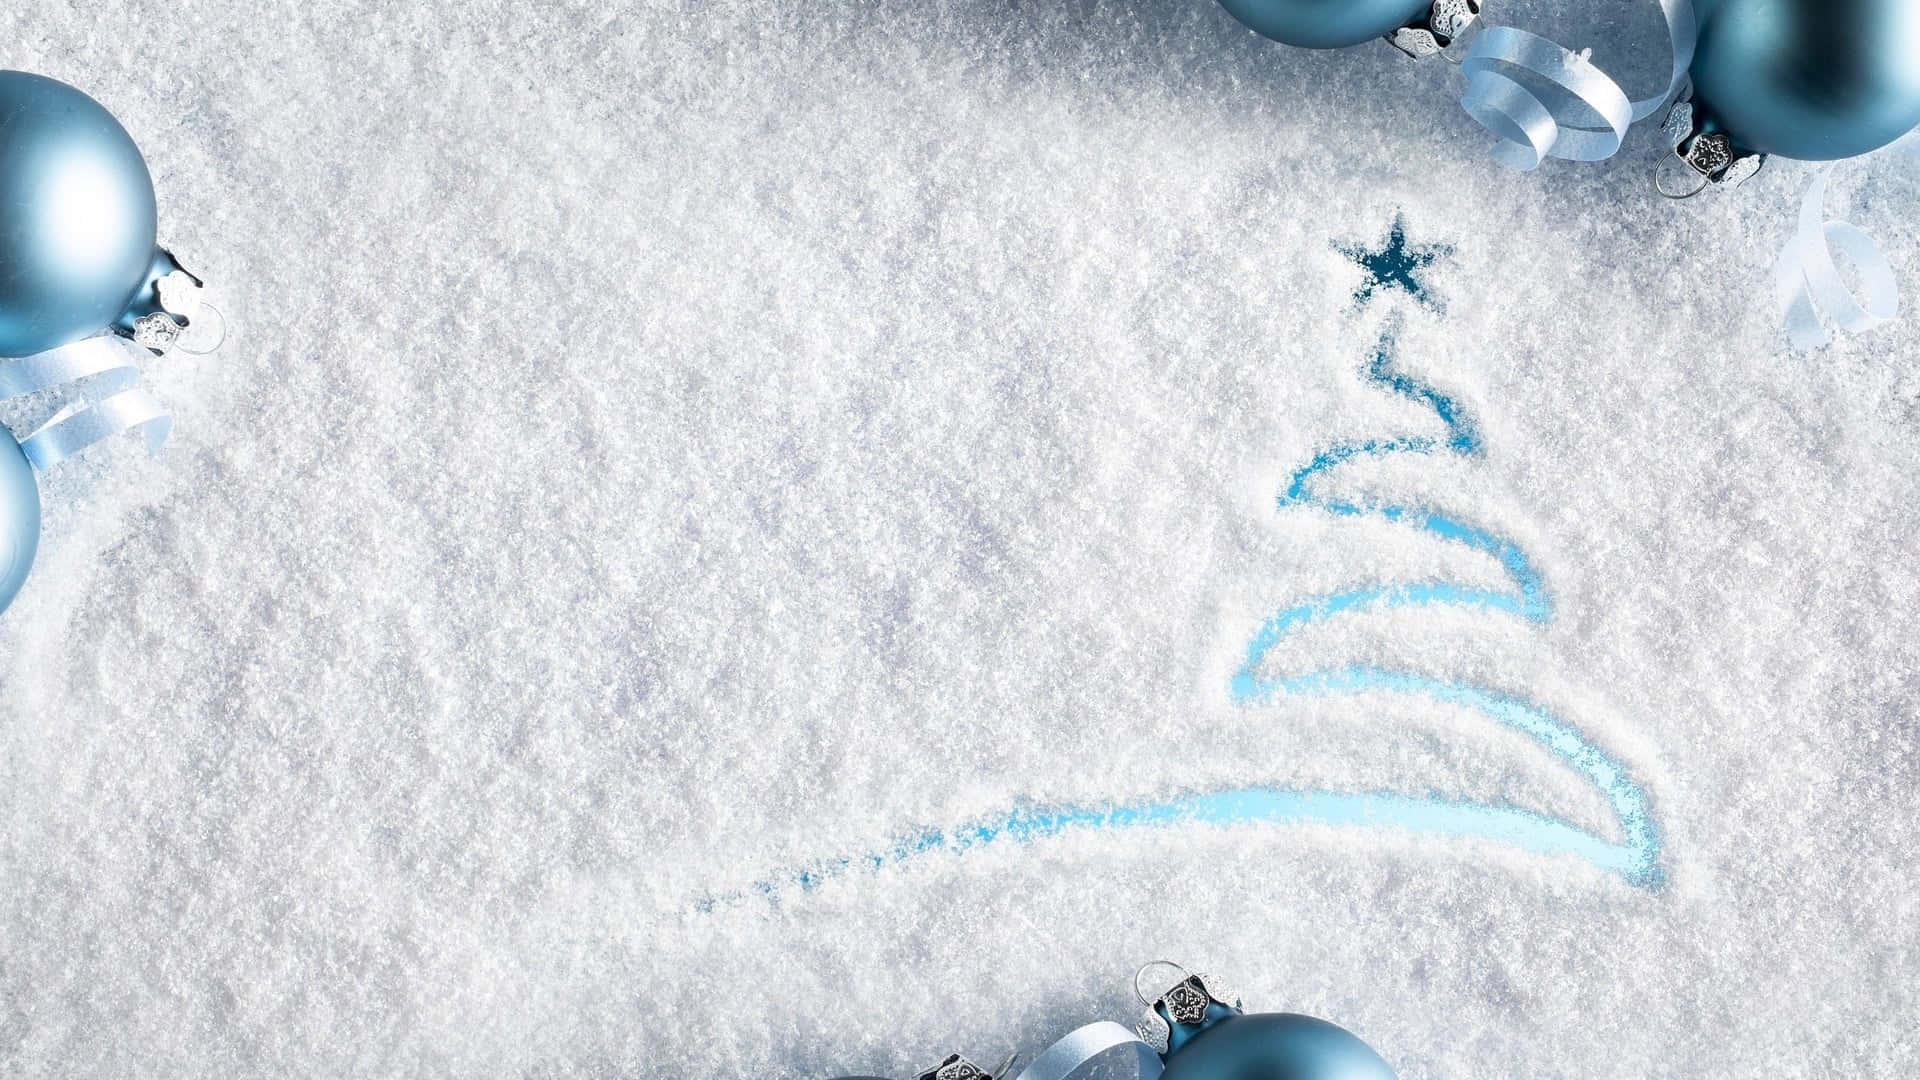 Einblauer Weihnachtsbaum Ist Auf Den Schnee Gezeichnet. Wallpaper